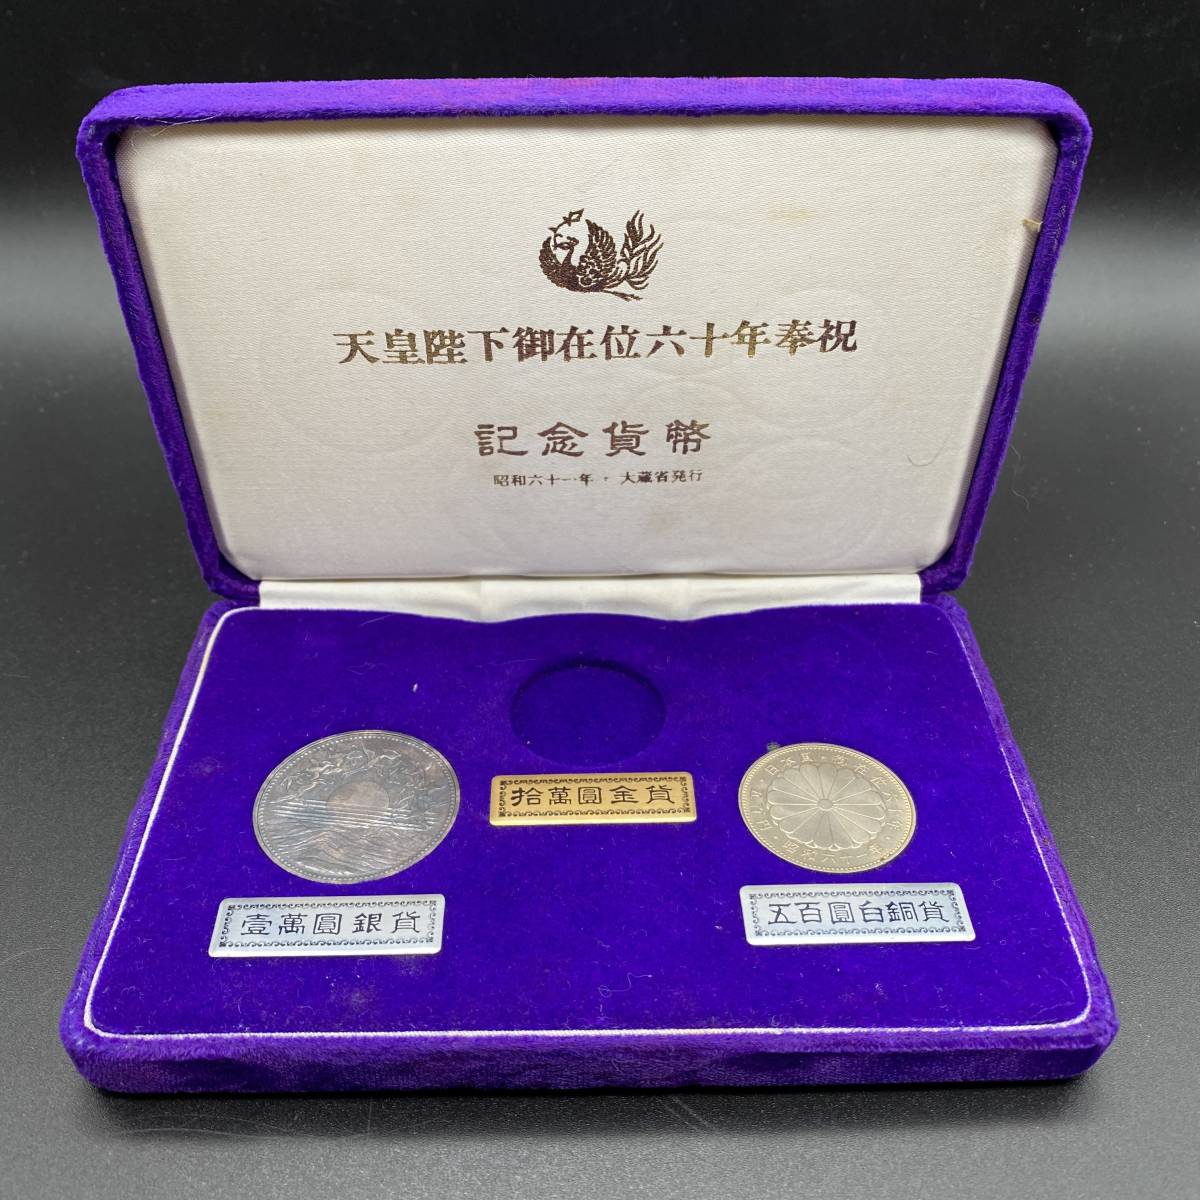 グッズ公式通販サイト 天皇陛下御在位60年 記念硬貨セット 旧貨幣/